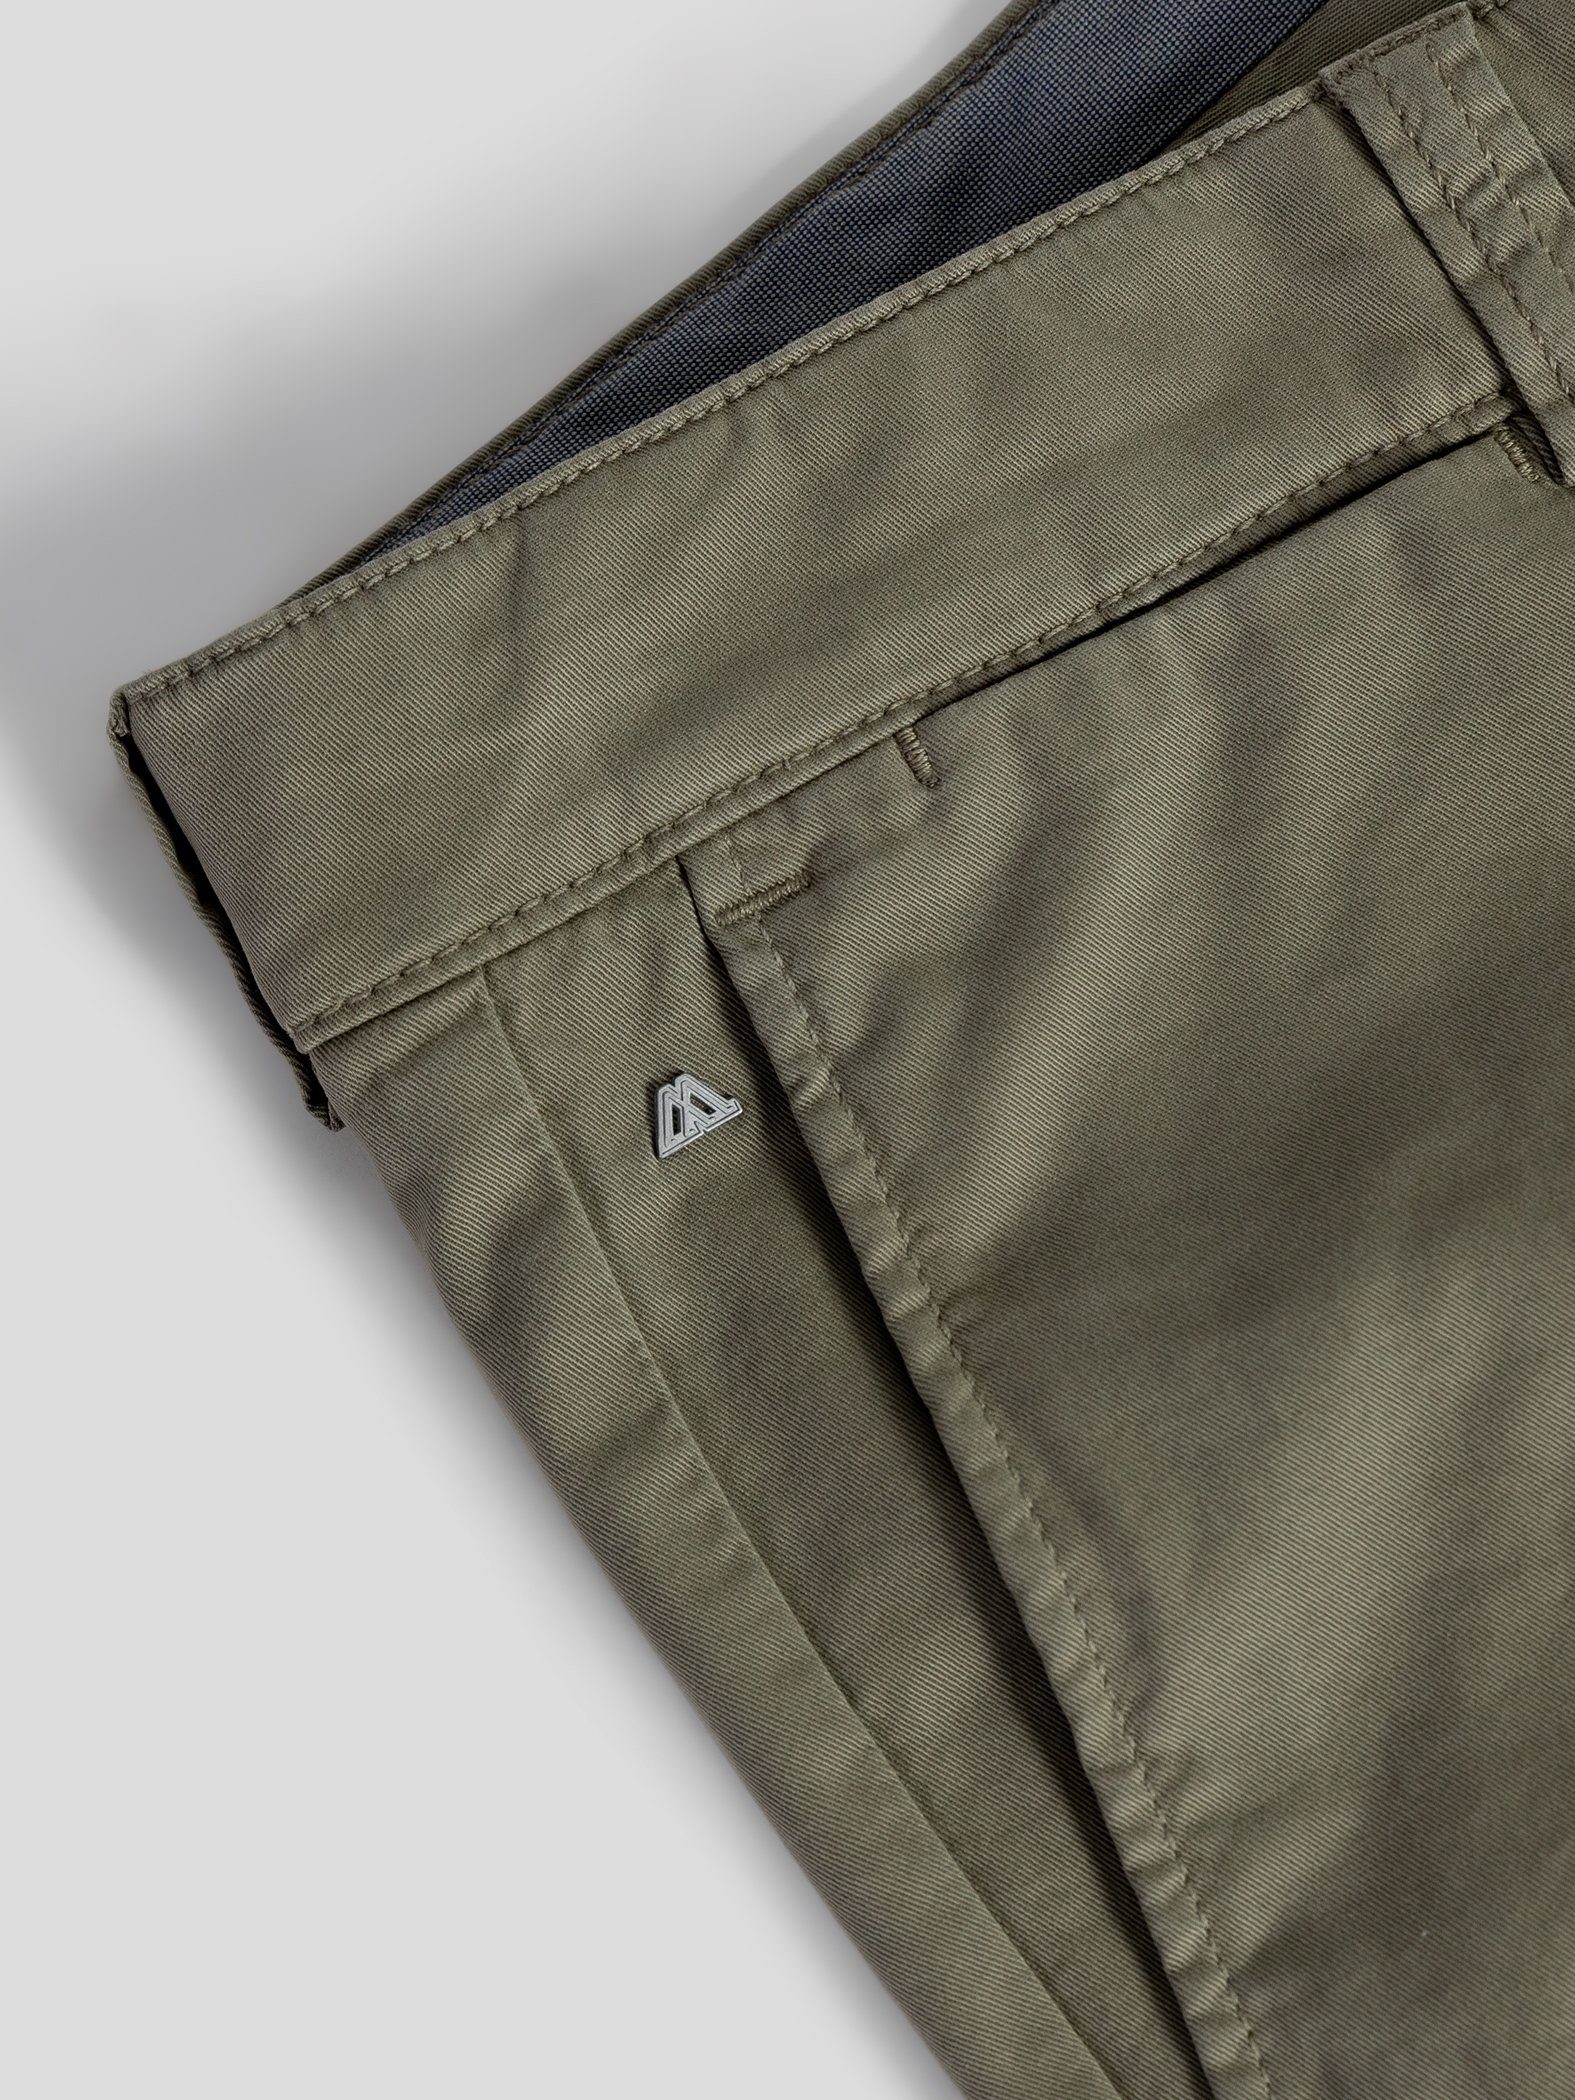 TwoMates Shorts Shorts mit Bund, elastischem Farbauswahl, GOTS-zertifiziert olivgrün